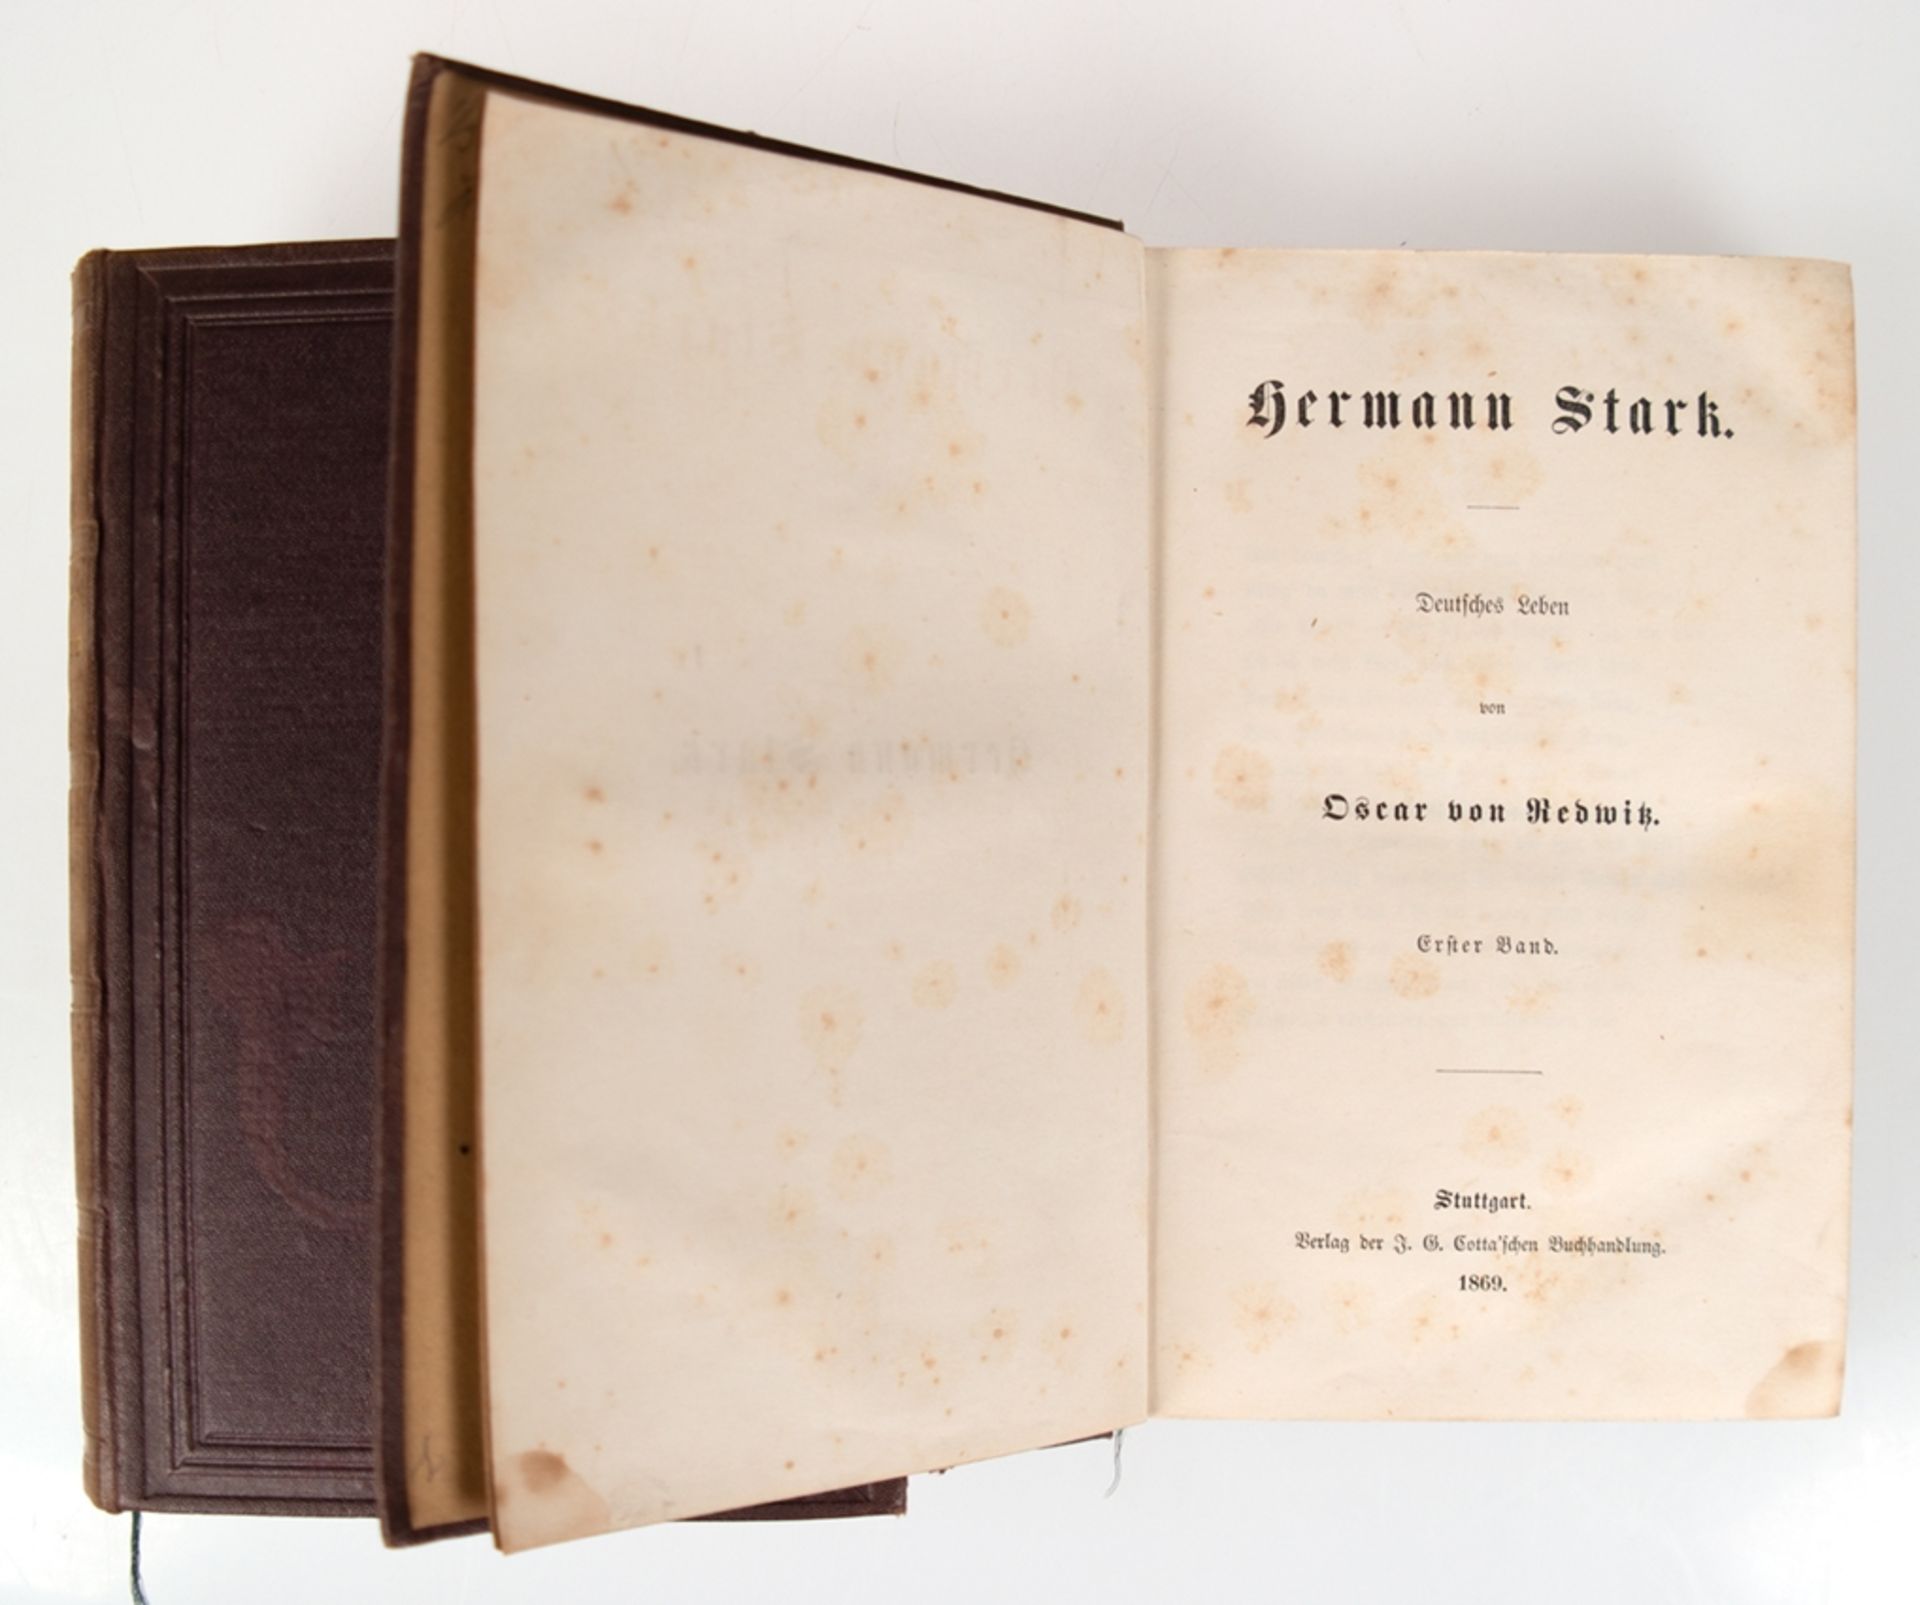 Stark, Hermann, 3 Bände "Deutsches Leben", 1869, Stuttgart, Verlag der Cotta'schen Buchhandlung, Ge